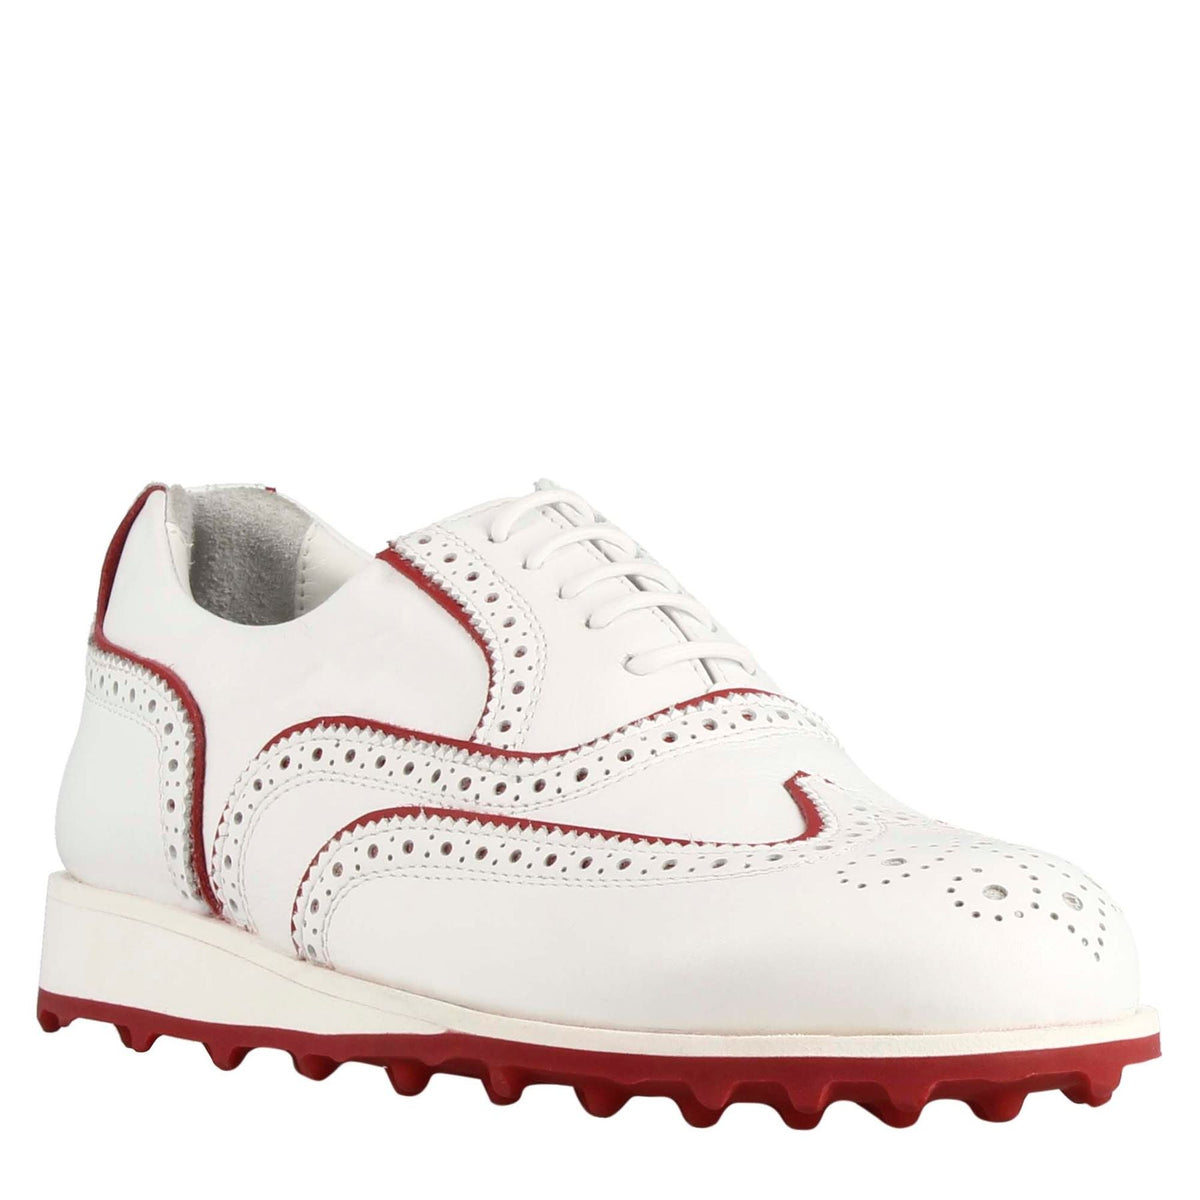 Scarpe golf fatte a mano da donna in pelle colore bianco con dettagli colore rosso.